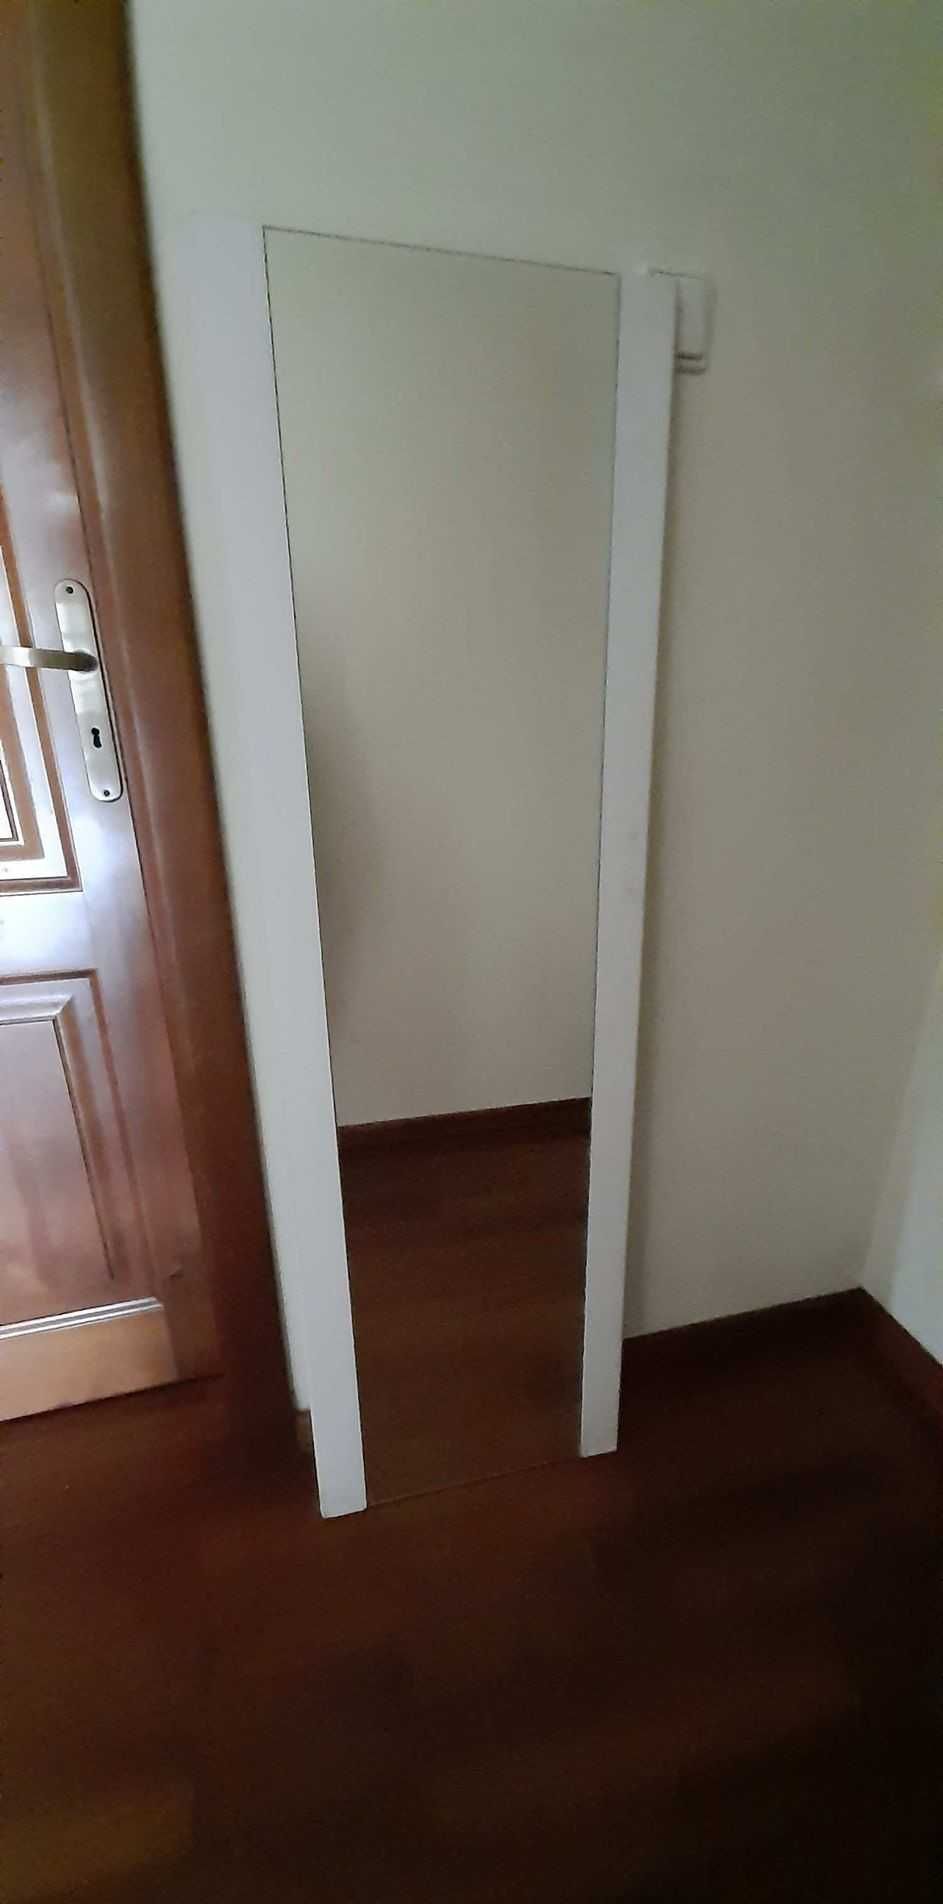 Lustra w zdemontowanych drzwiach od szafy (2 sztuki)